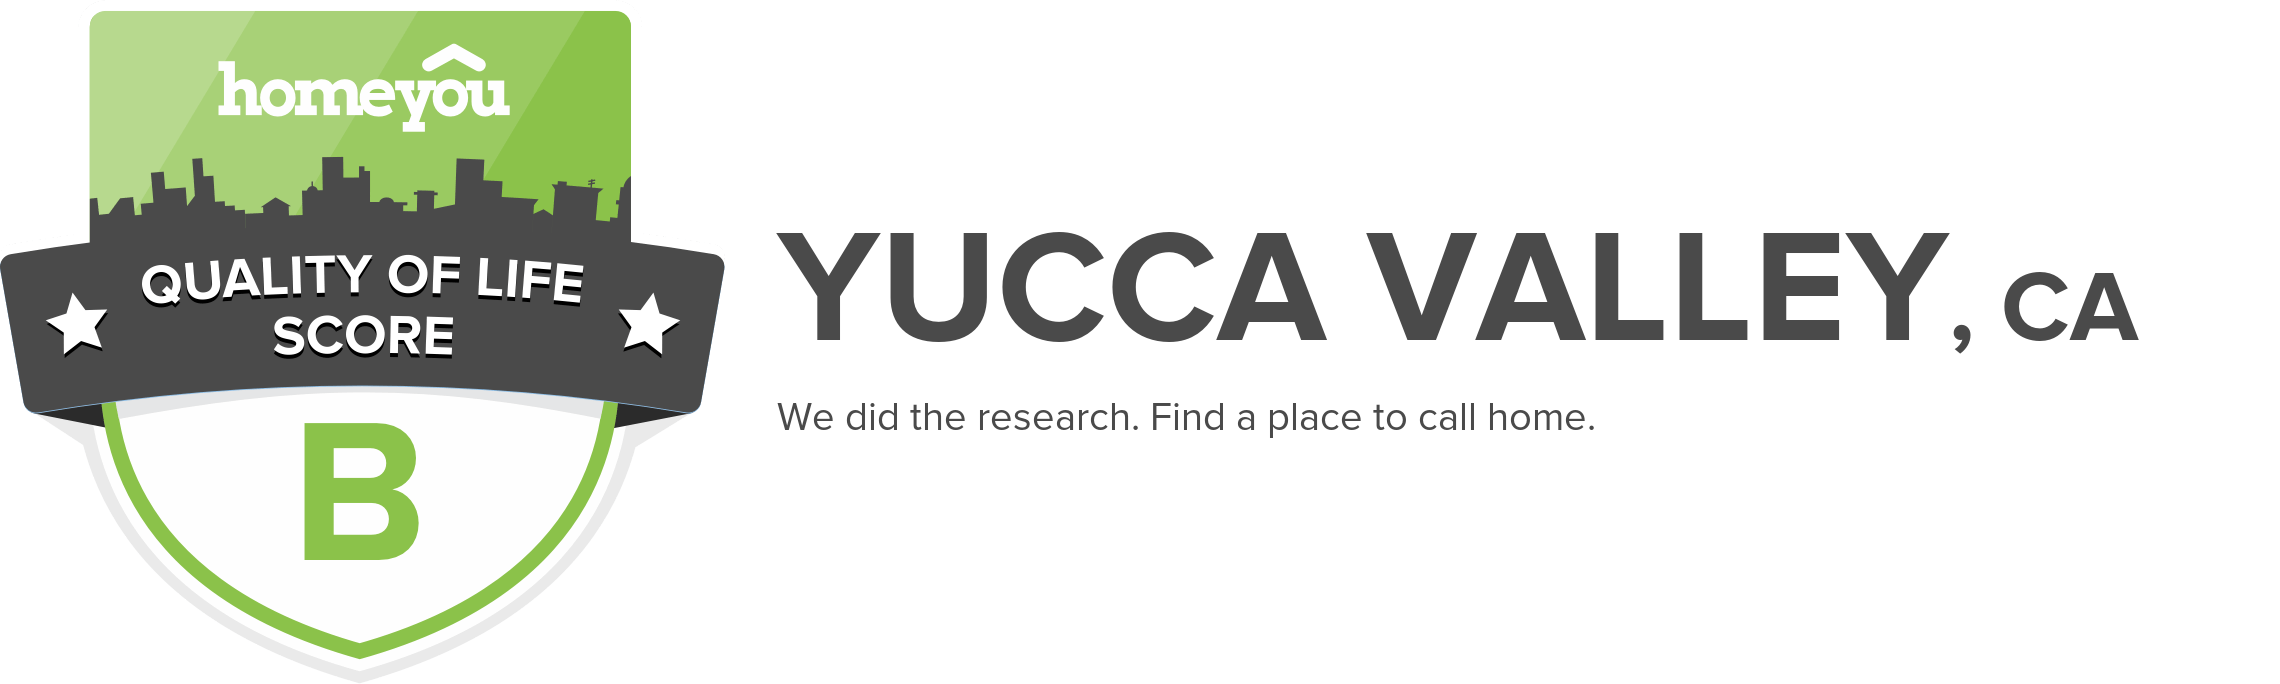 Yucca Valley, CA